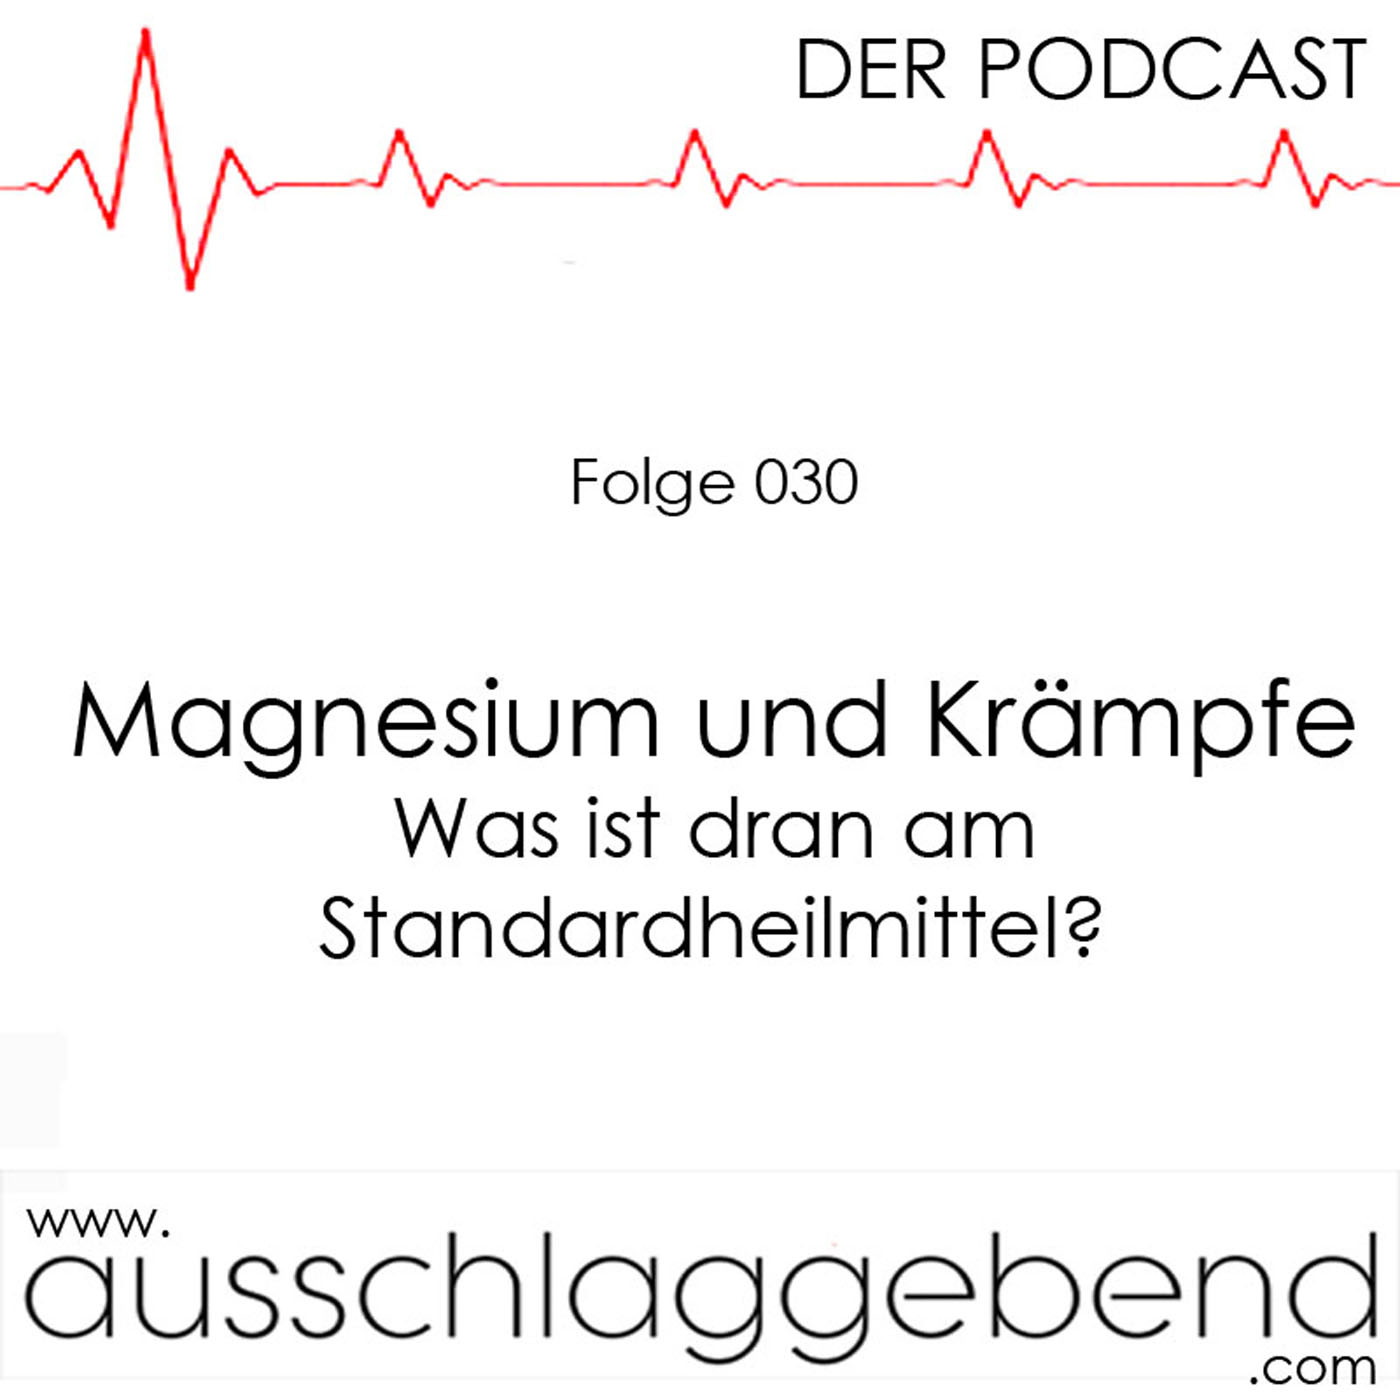 Folge 030 - Magnesium und Krämpfe - Was ist dran am Standardheilmittel?